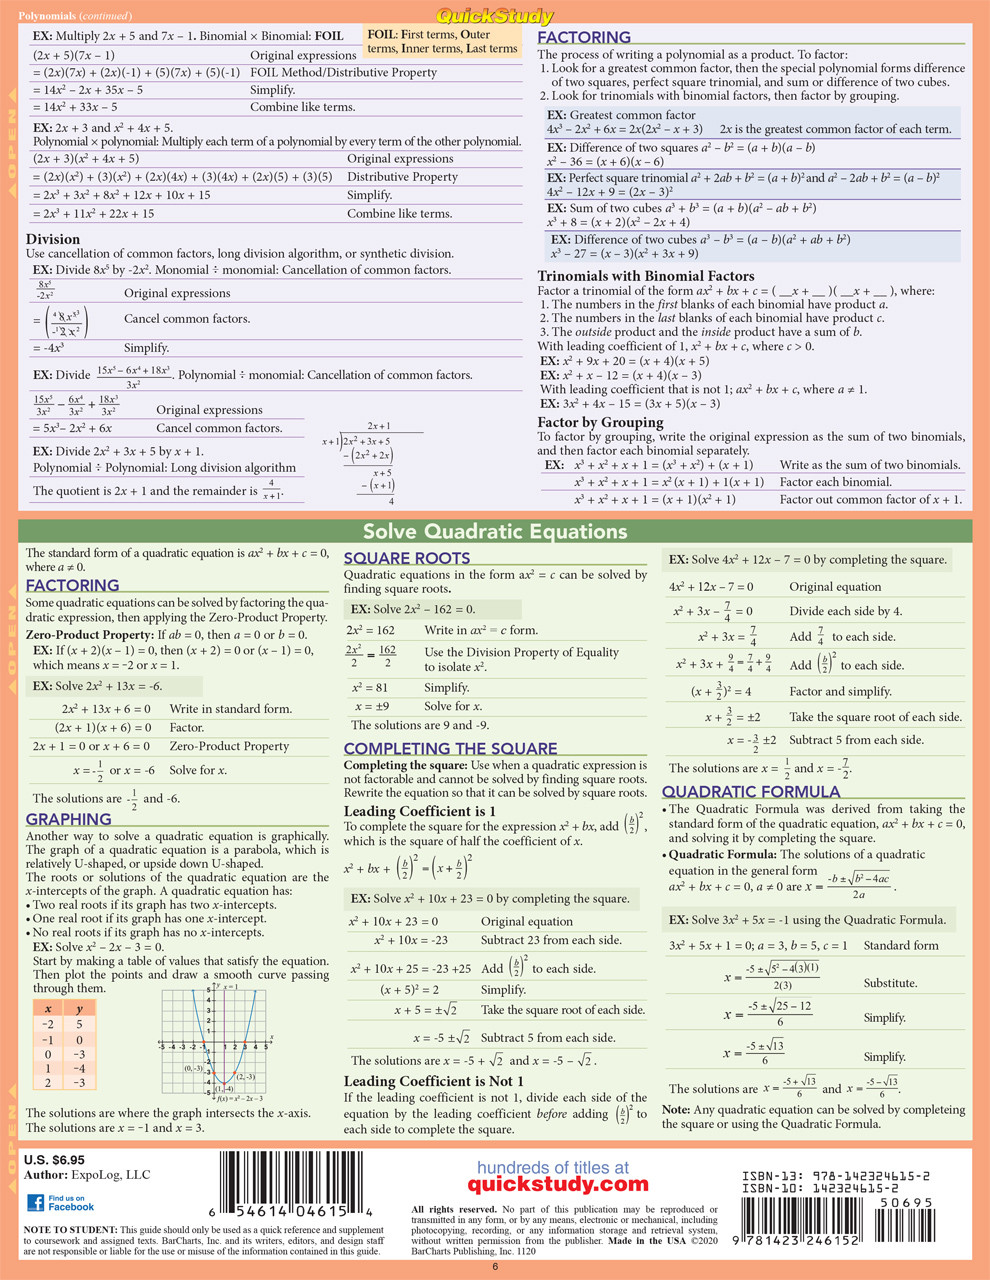 BarCharts Pre-Algebra Laminated Quick Study Guide, Grades 7-12, Mardel, 9781572227262